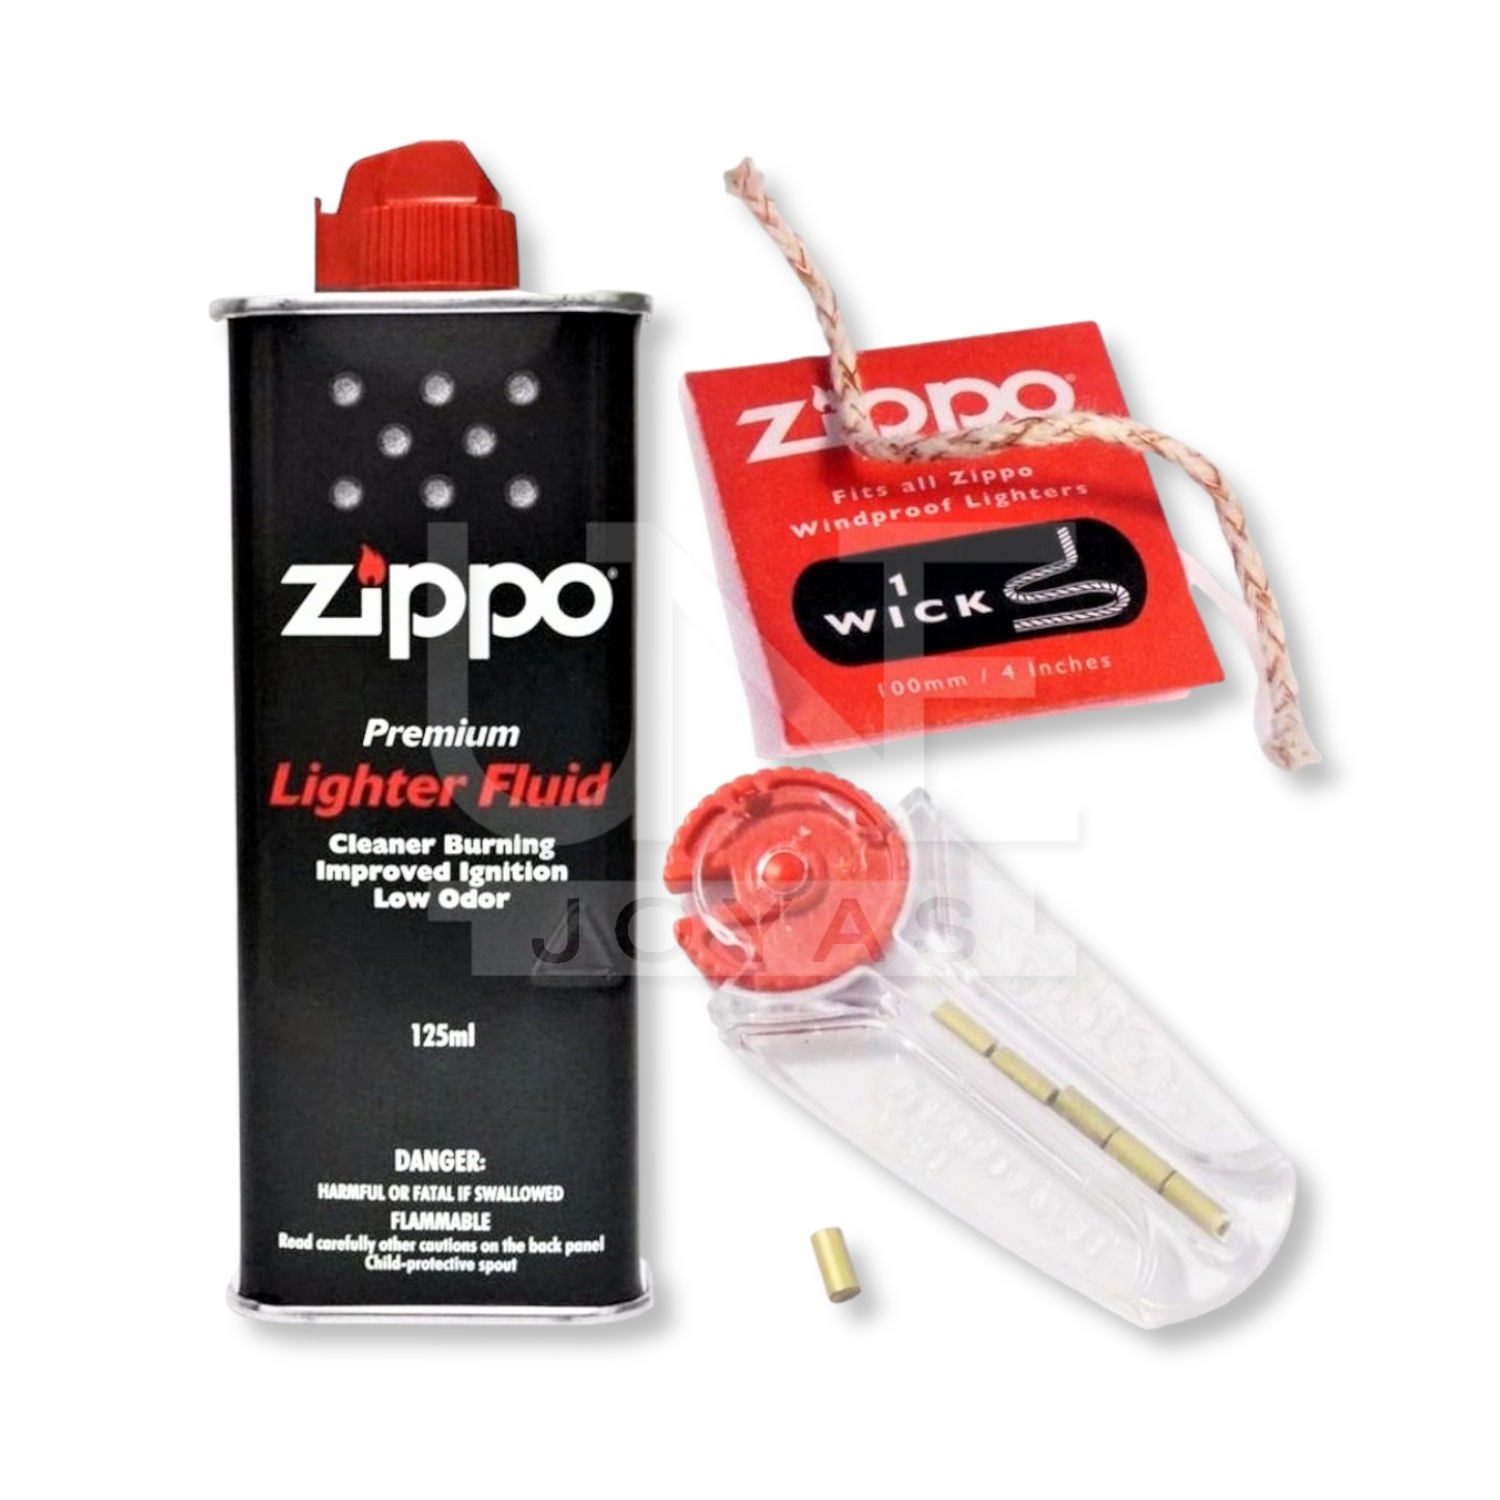 ZIPPO, Accesorios originales de Zippo.